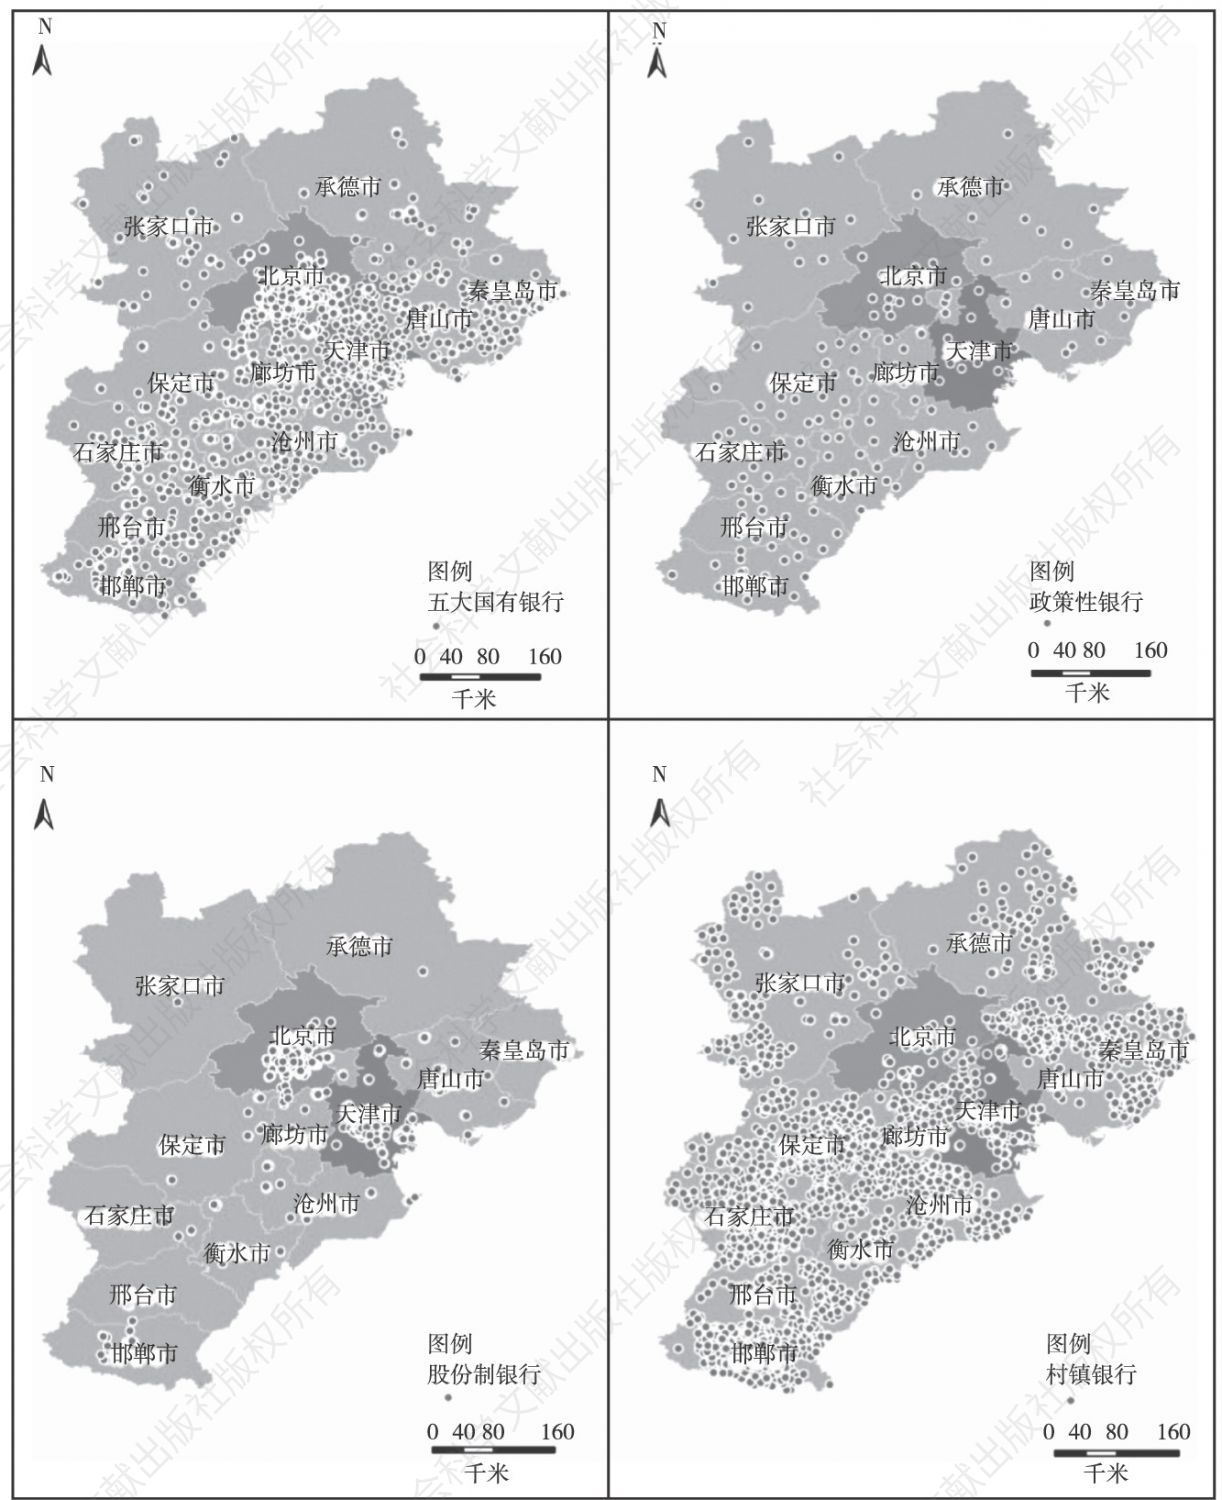 图23 2018年（截止到12月24日）京津冀区域内不同类型银行分支机构空间分布